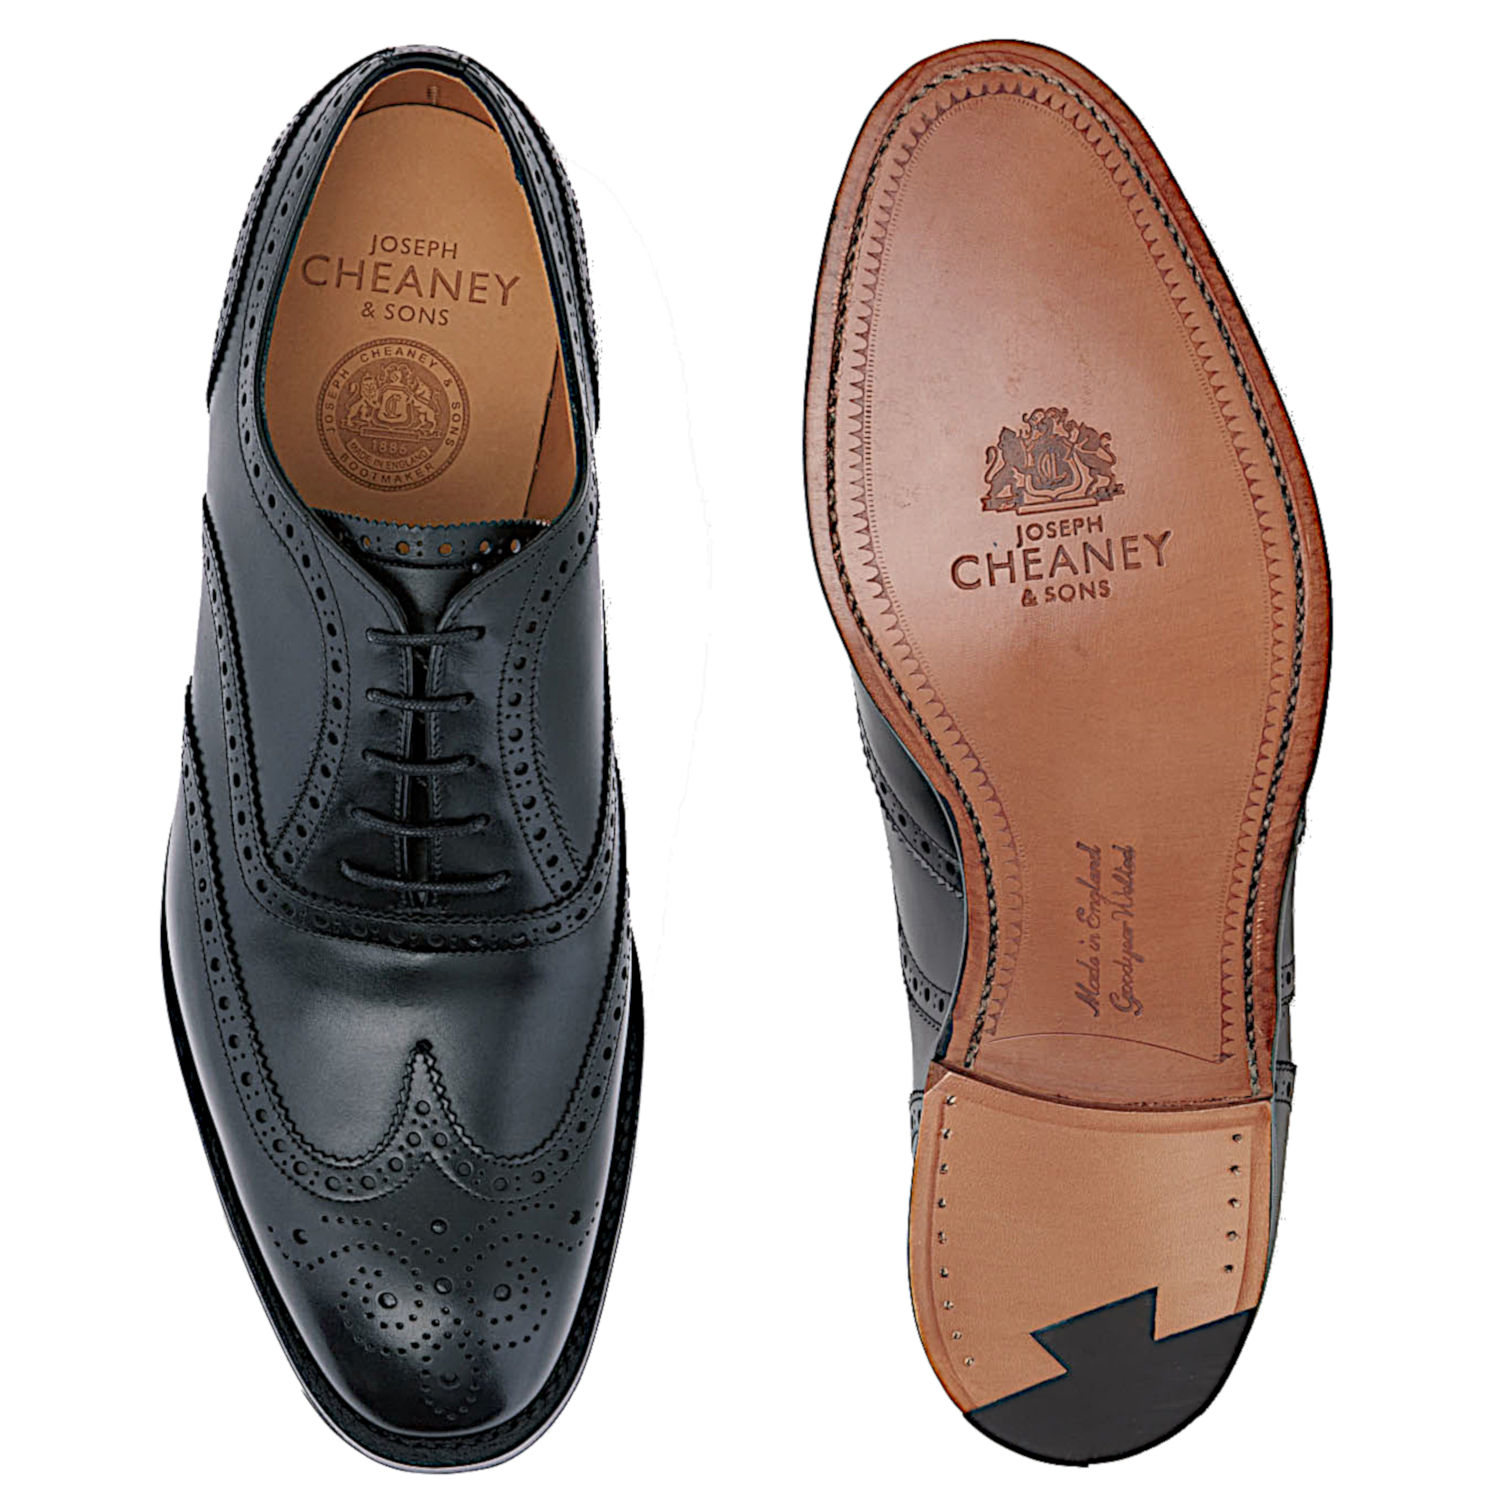 Cheaney Arthur III - Pediwear Footwear